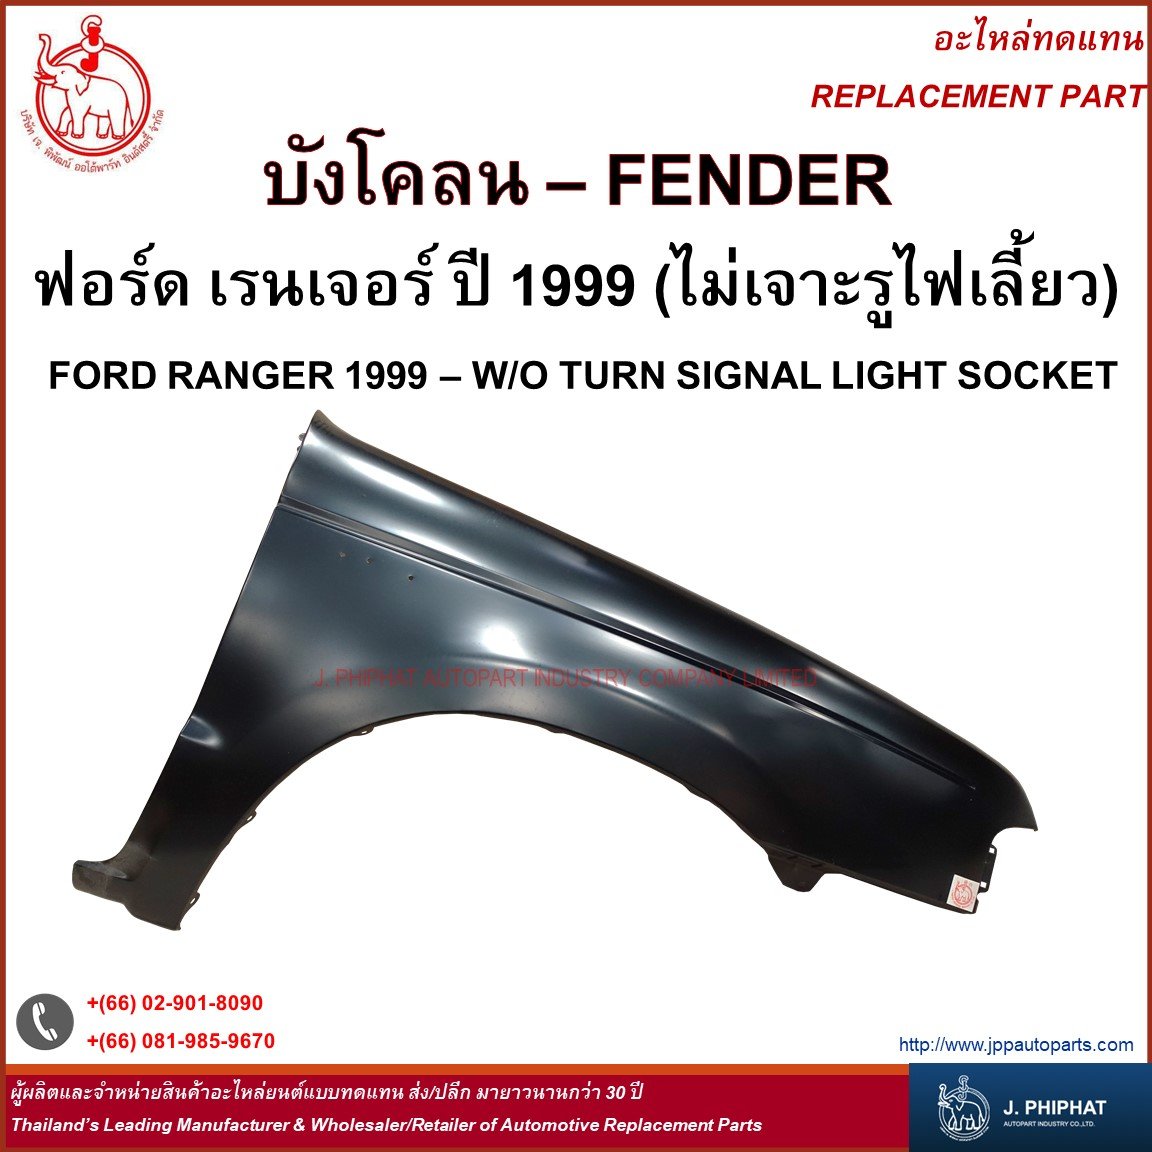 Fender - Ford Ranger 1999 - W/O Turn Signal Light Socket